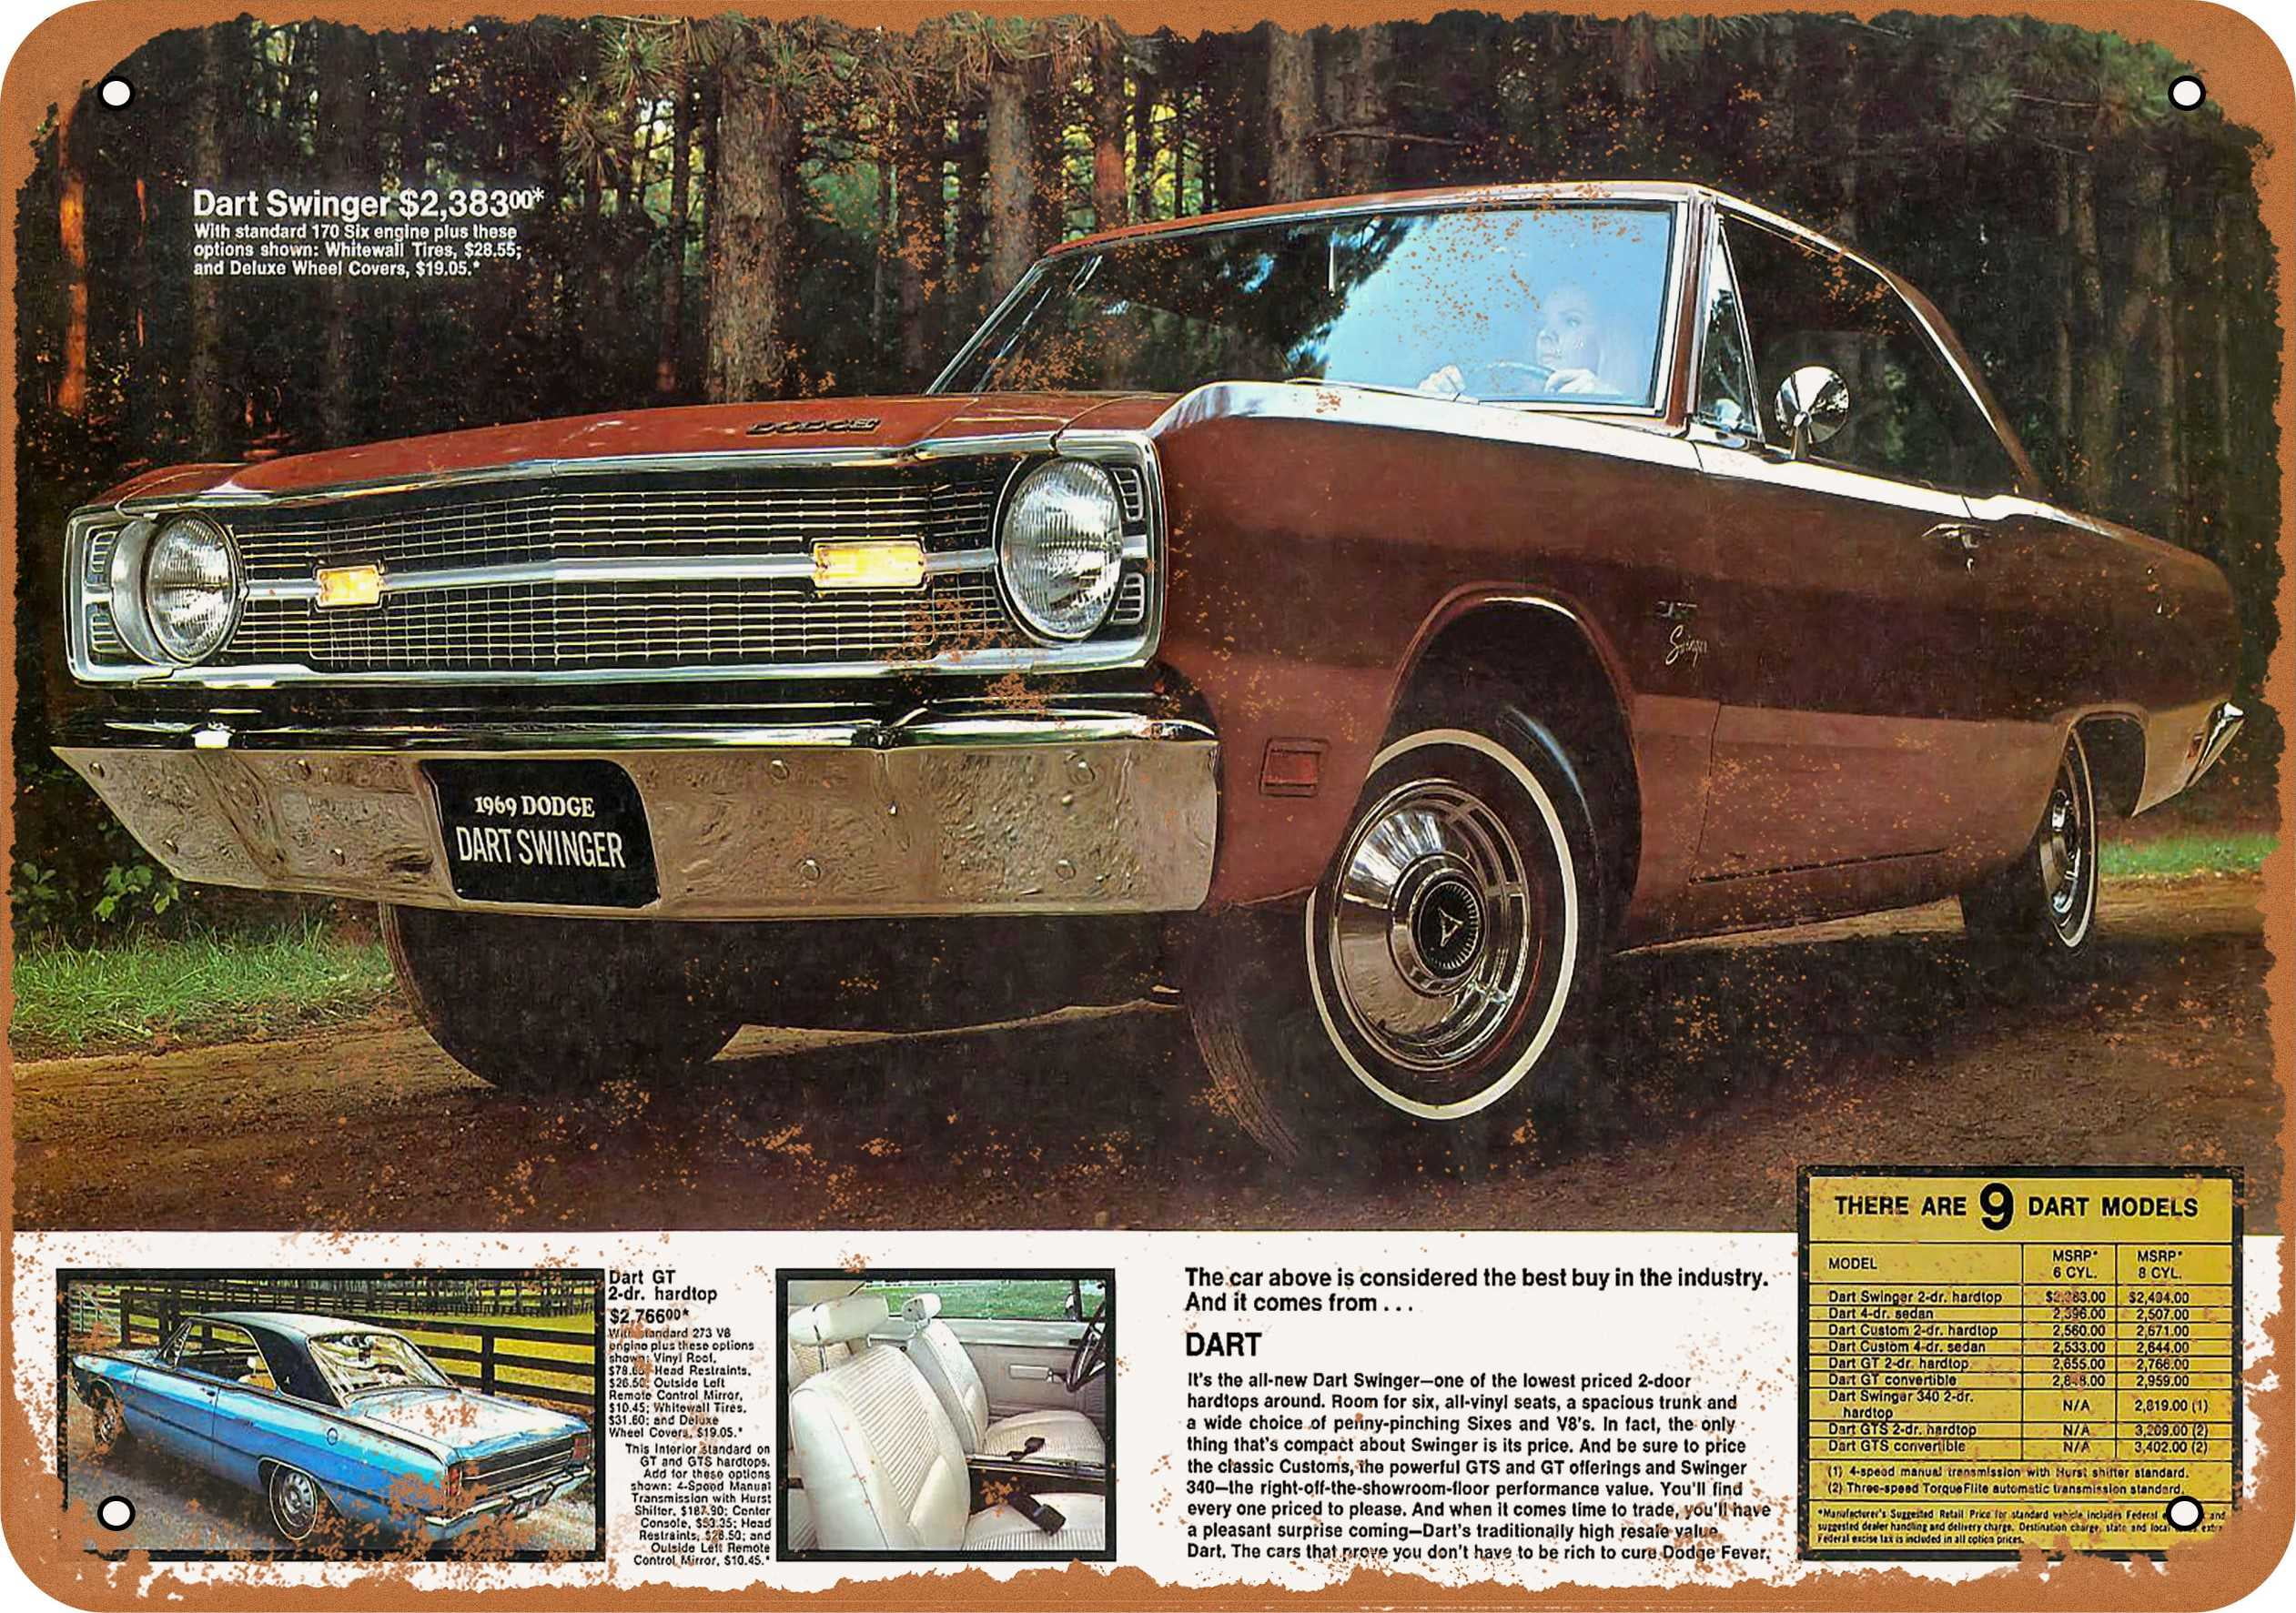 1969 Dodge Dart Swinger Metal Sign - 7x10 inch - Vintage Look 2